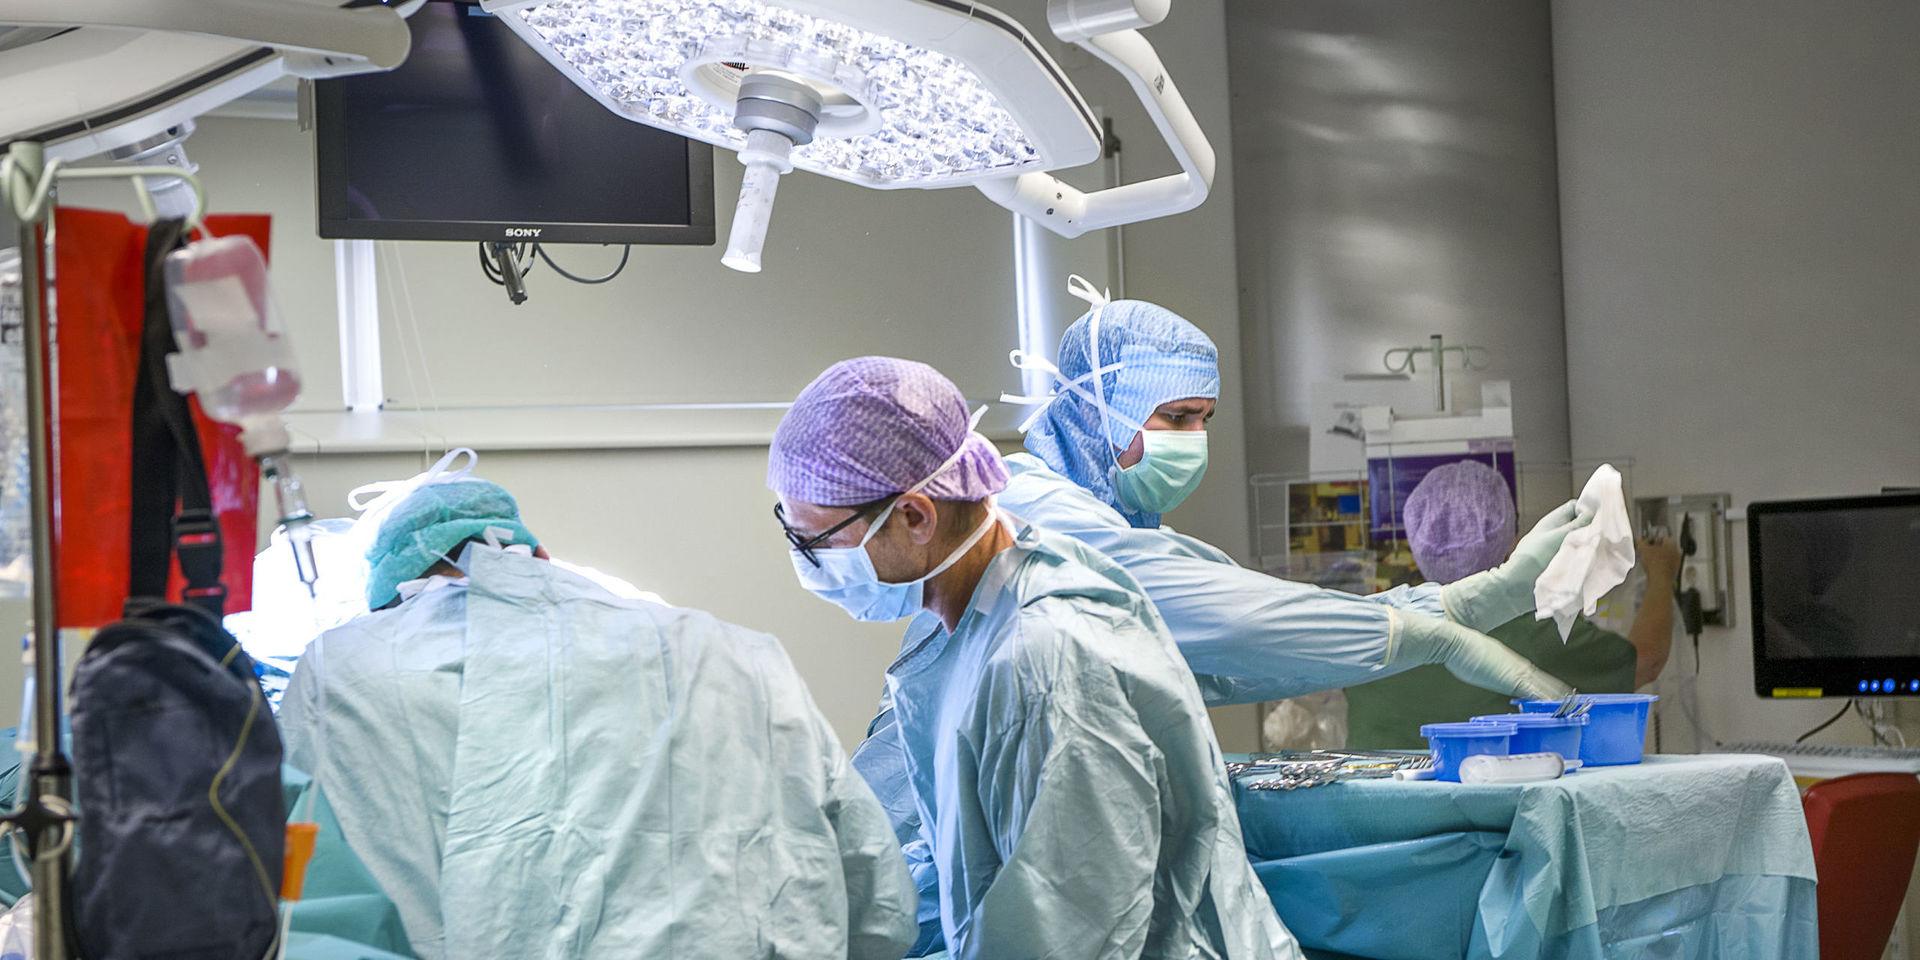 Ett 30-tal operationer ställdes in men nu är det fritt fram för sjukhuset i Varberg att operera alla patienter igen.